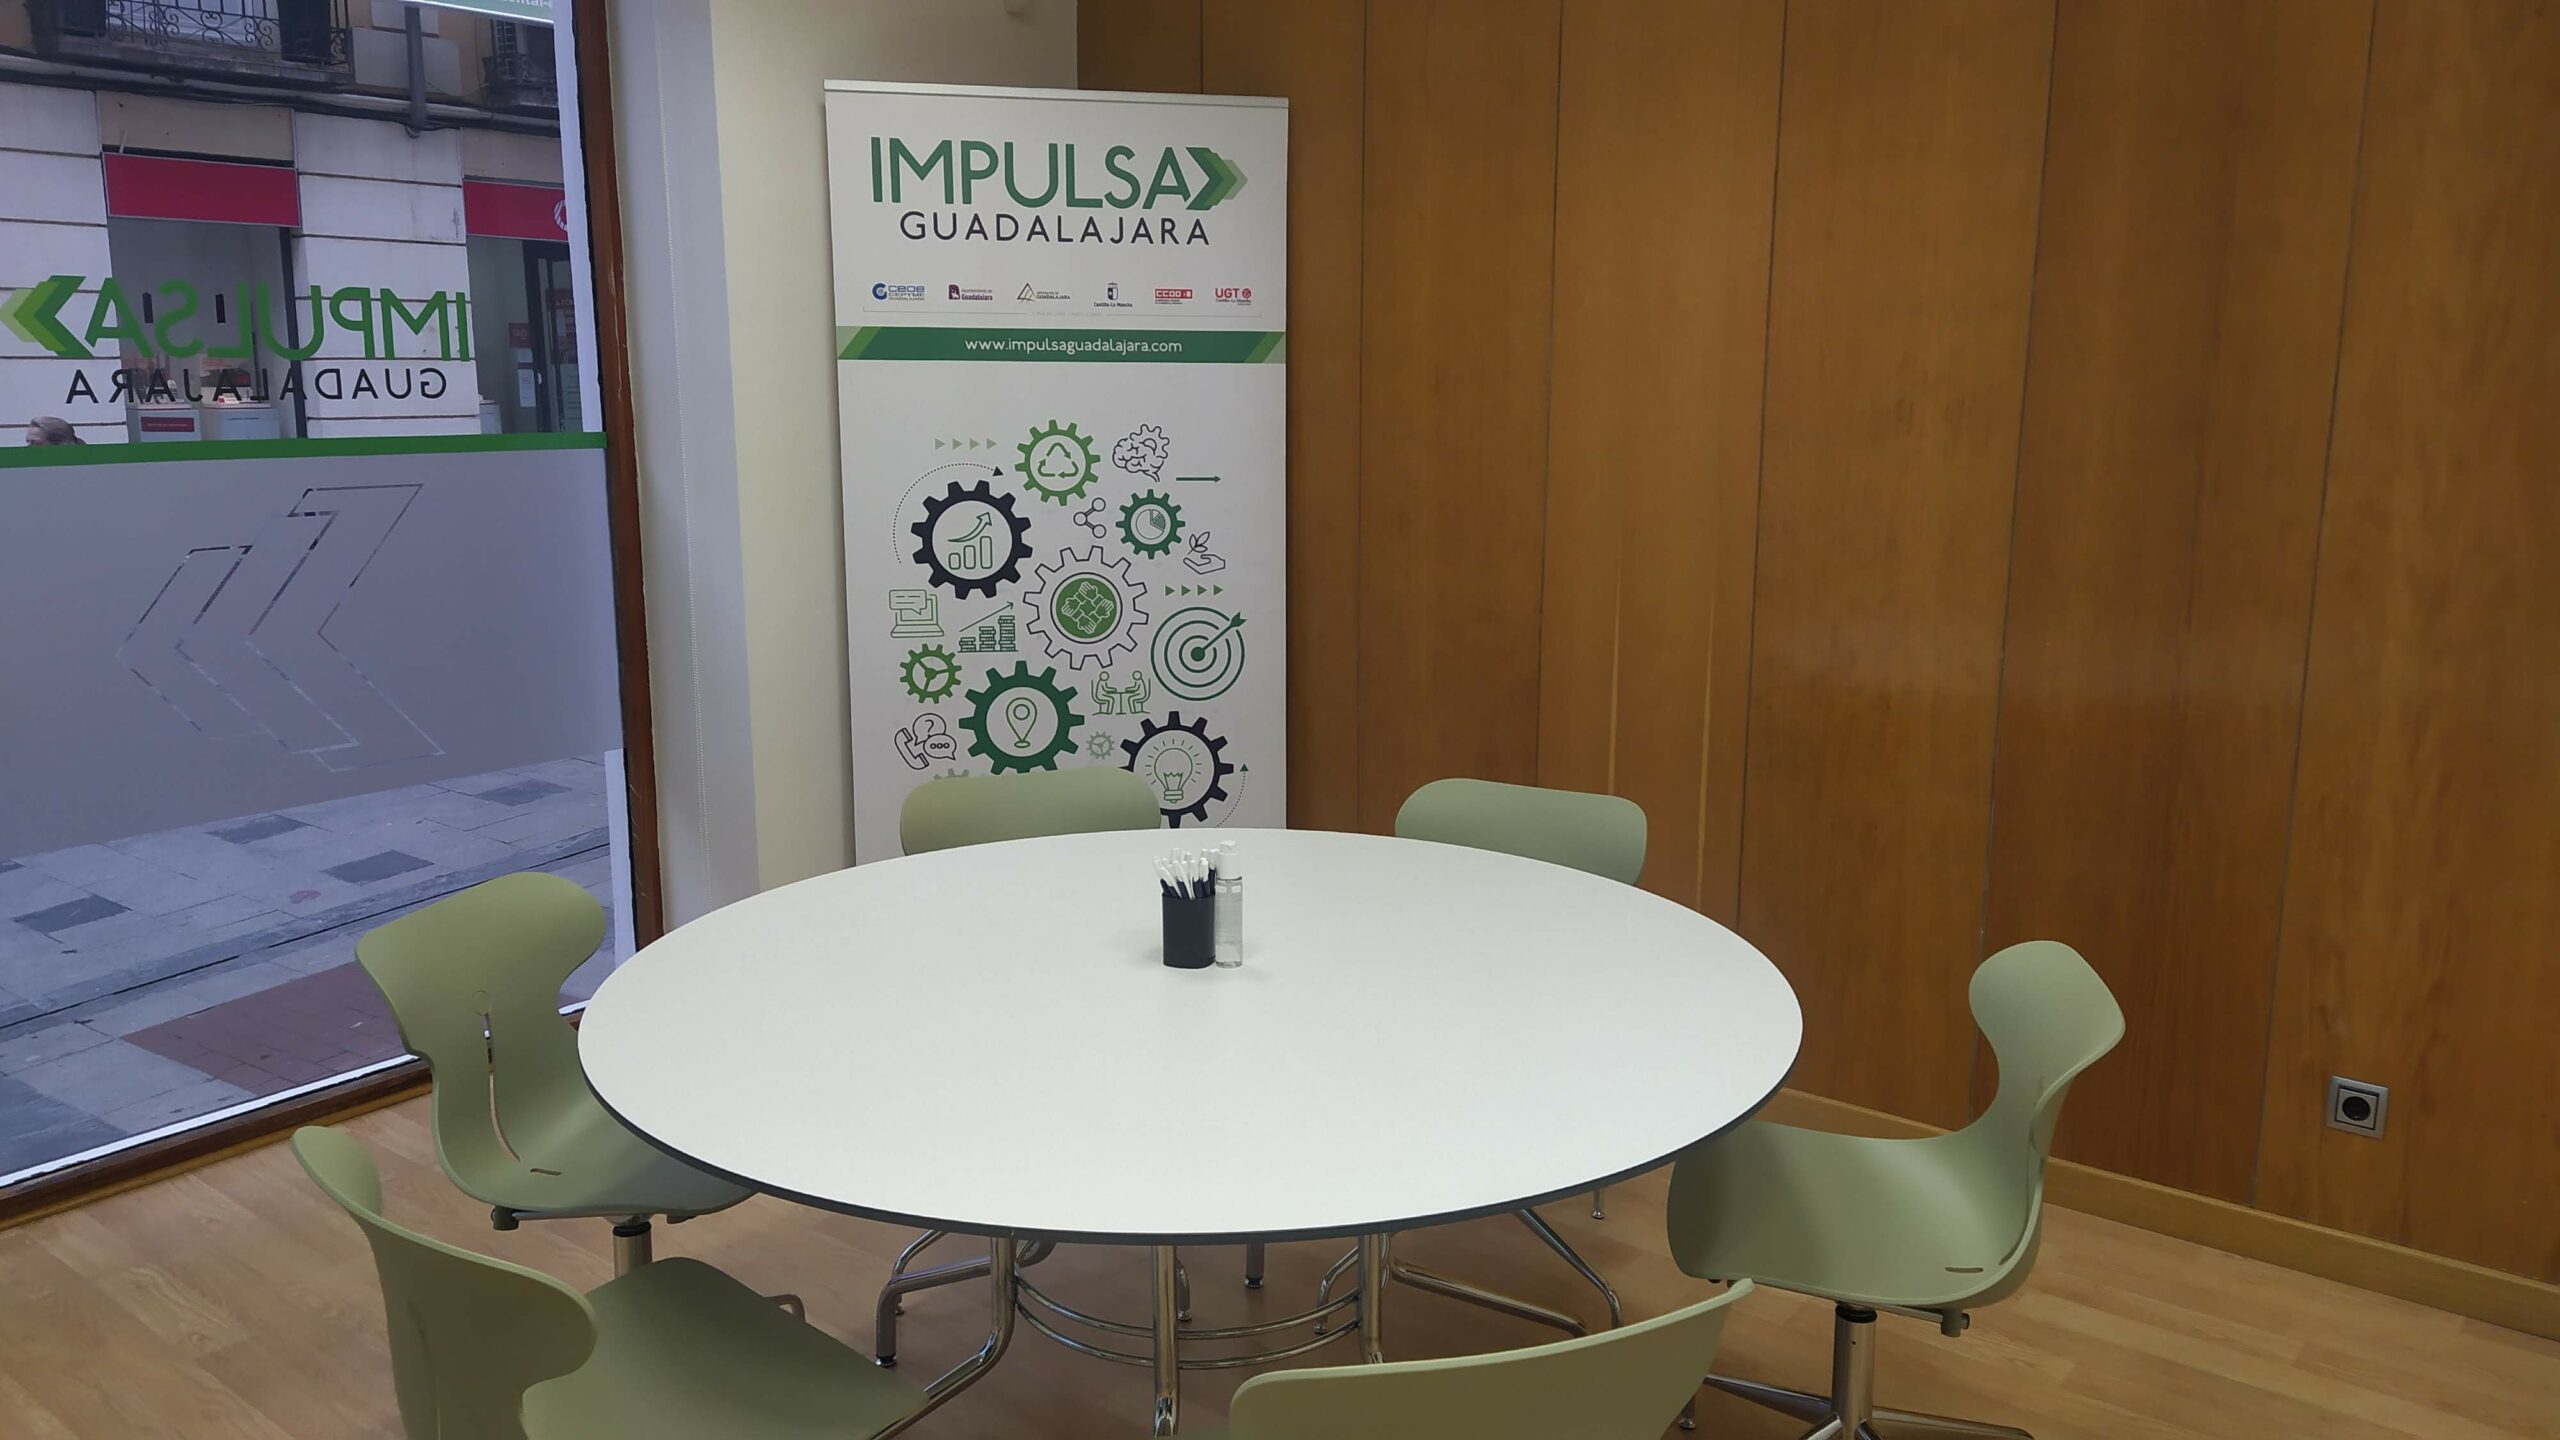 Una de las salas de reuniones de la oficina de "Impulsa Guadalajara". (Foto: La Crónic@)